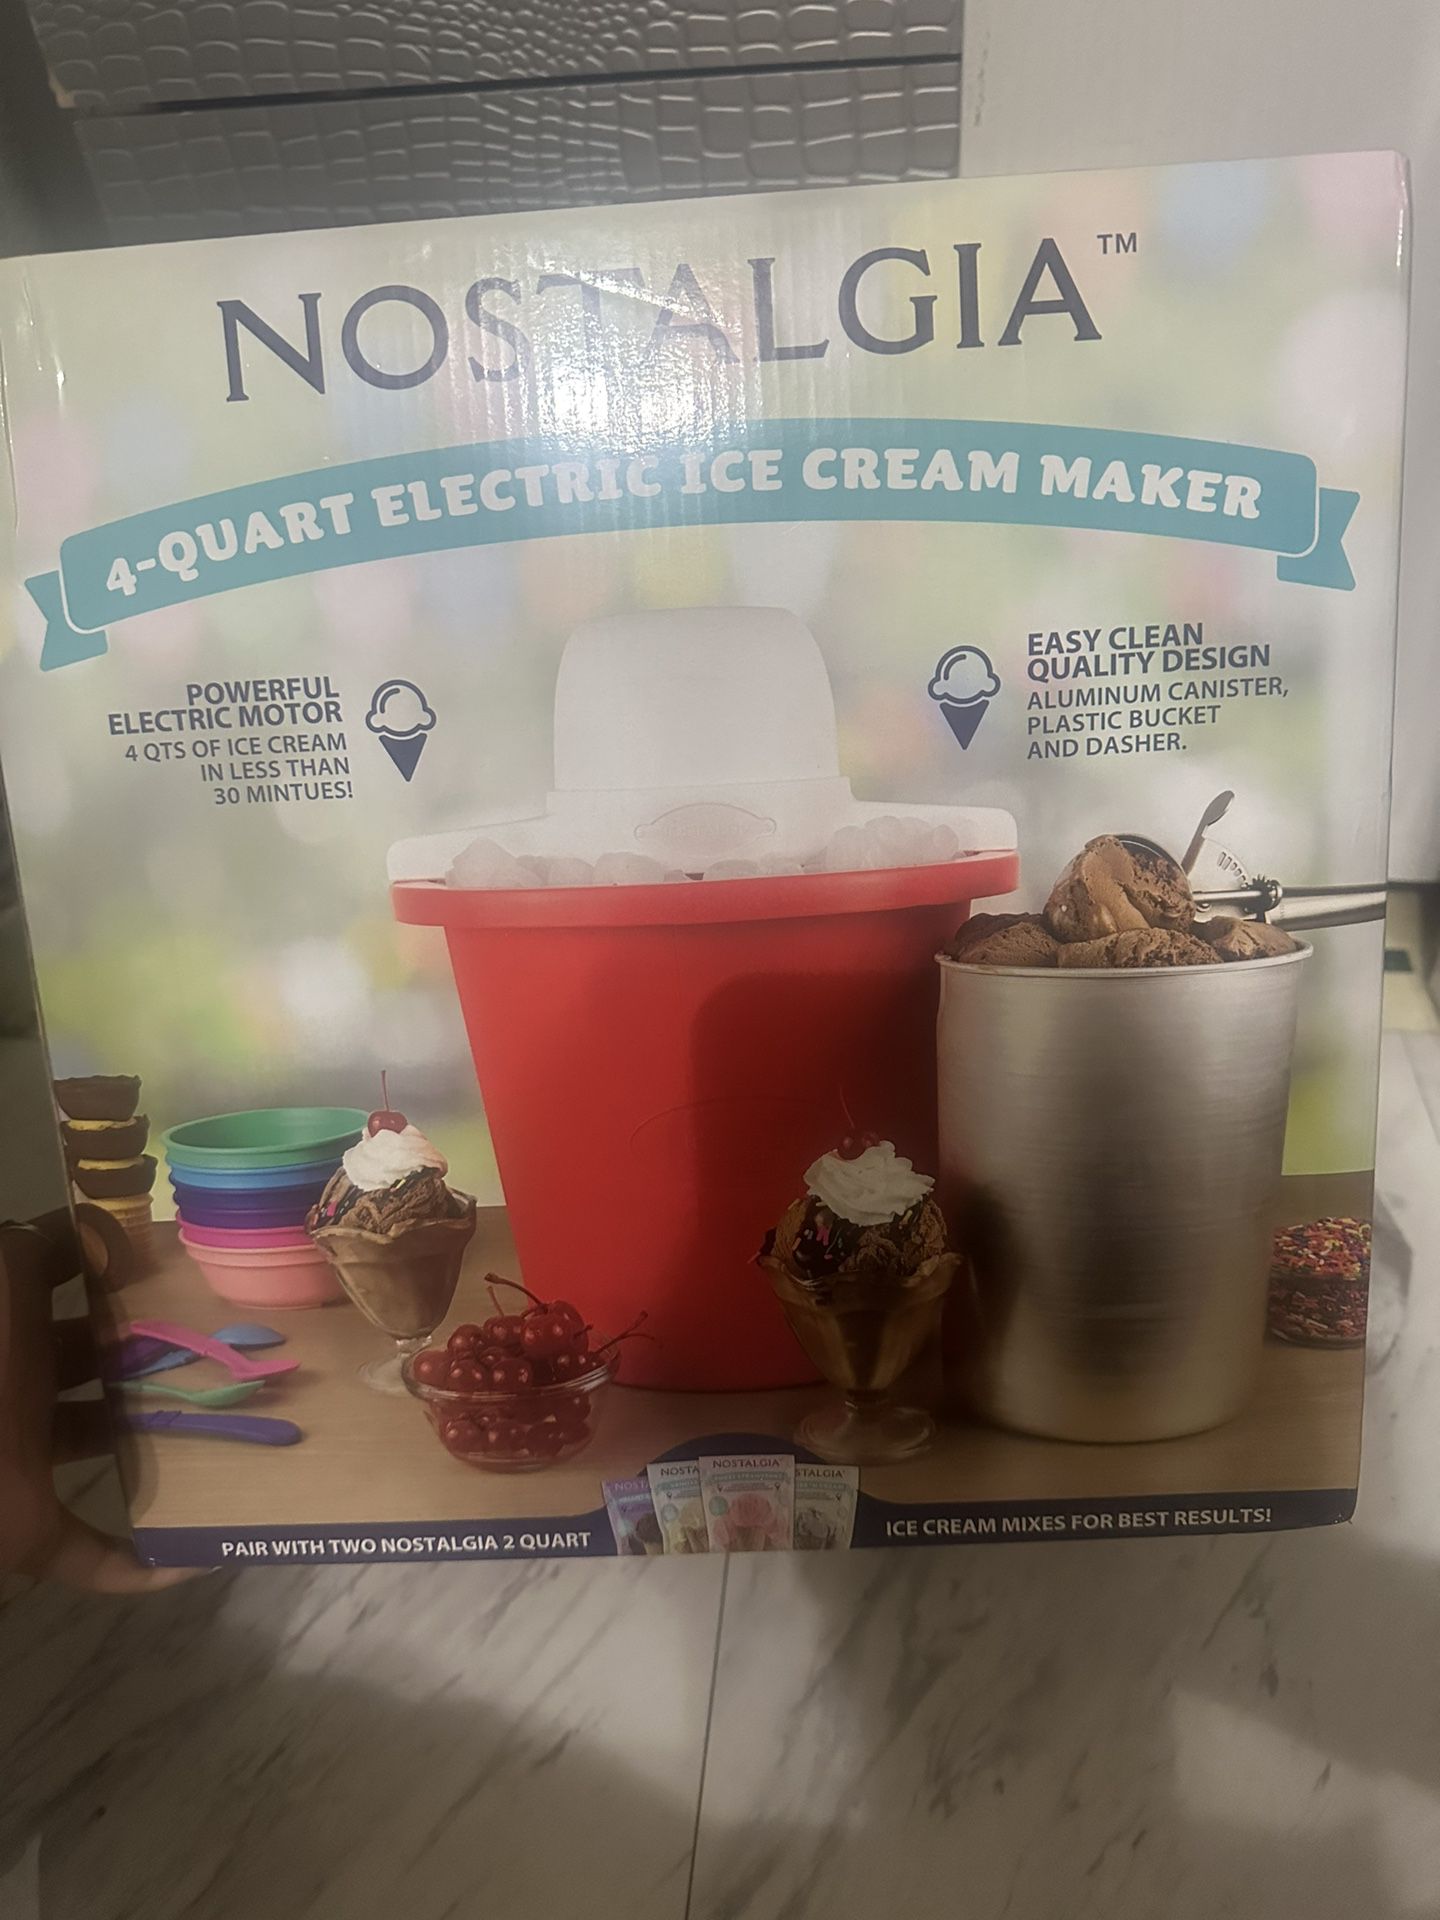 Nostalgia 4-Quart Bucket Electric Ice Cream Maker, Red